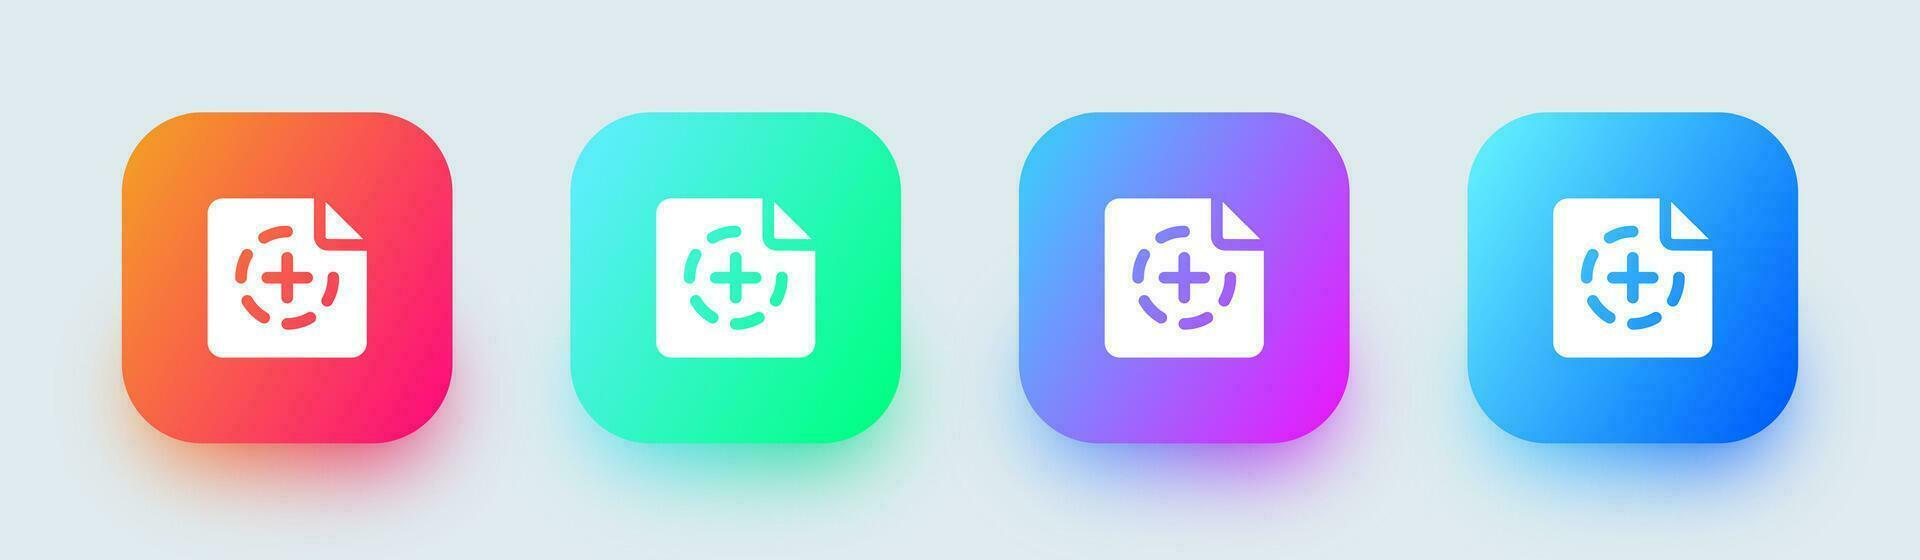 Nouveau solide icône dans carré pente couleurs. document ajouter panneaux vecteur illustration.